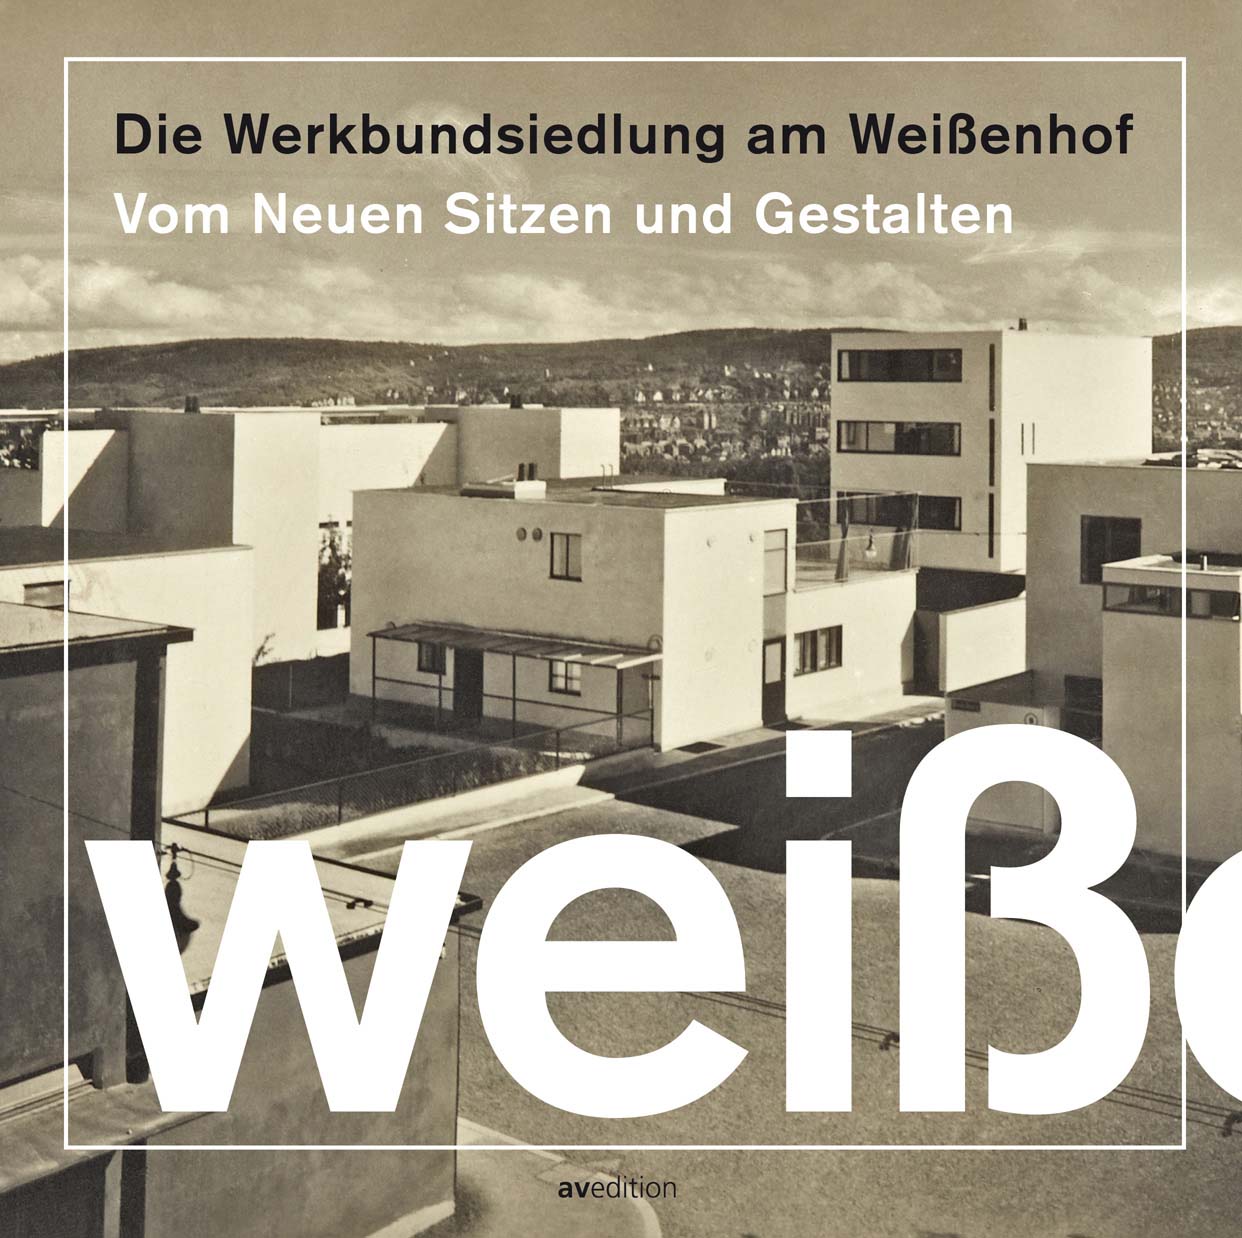 Изображение Werkbund Settlement Weissenhof 2